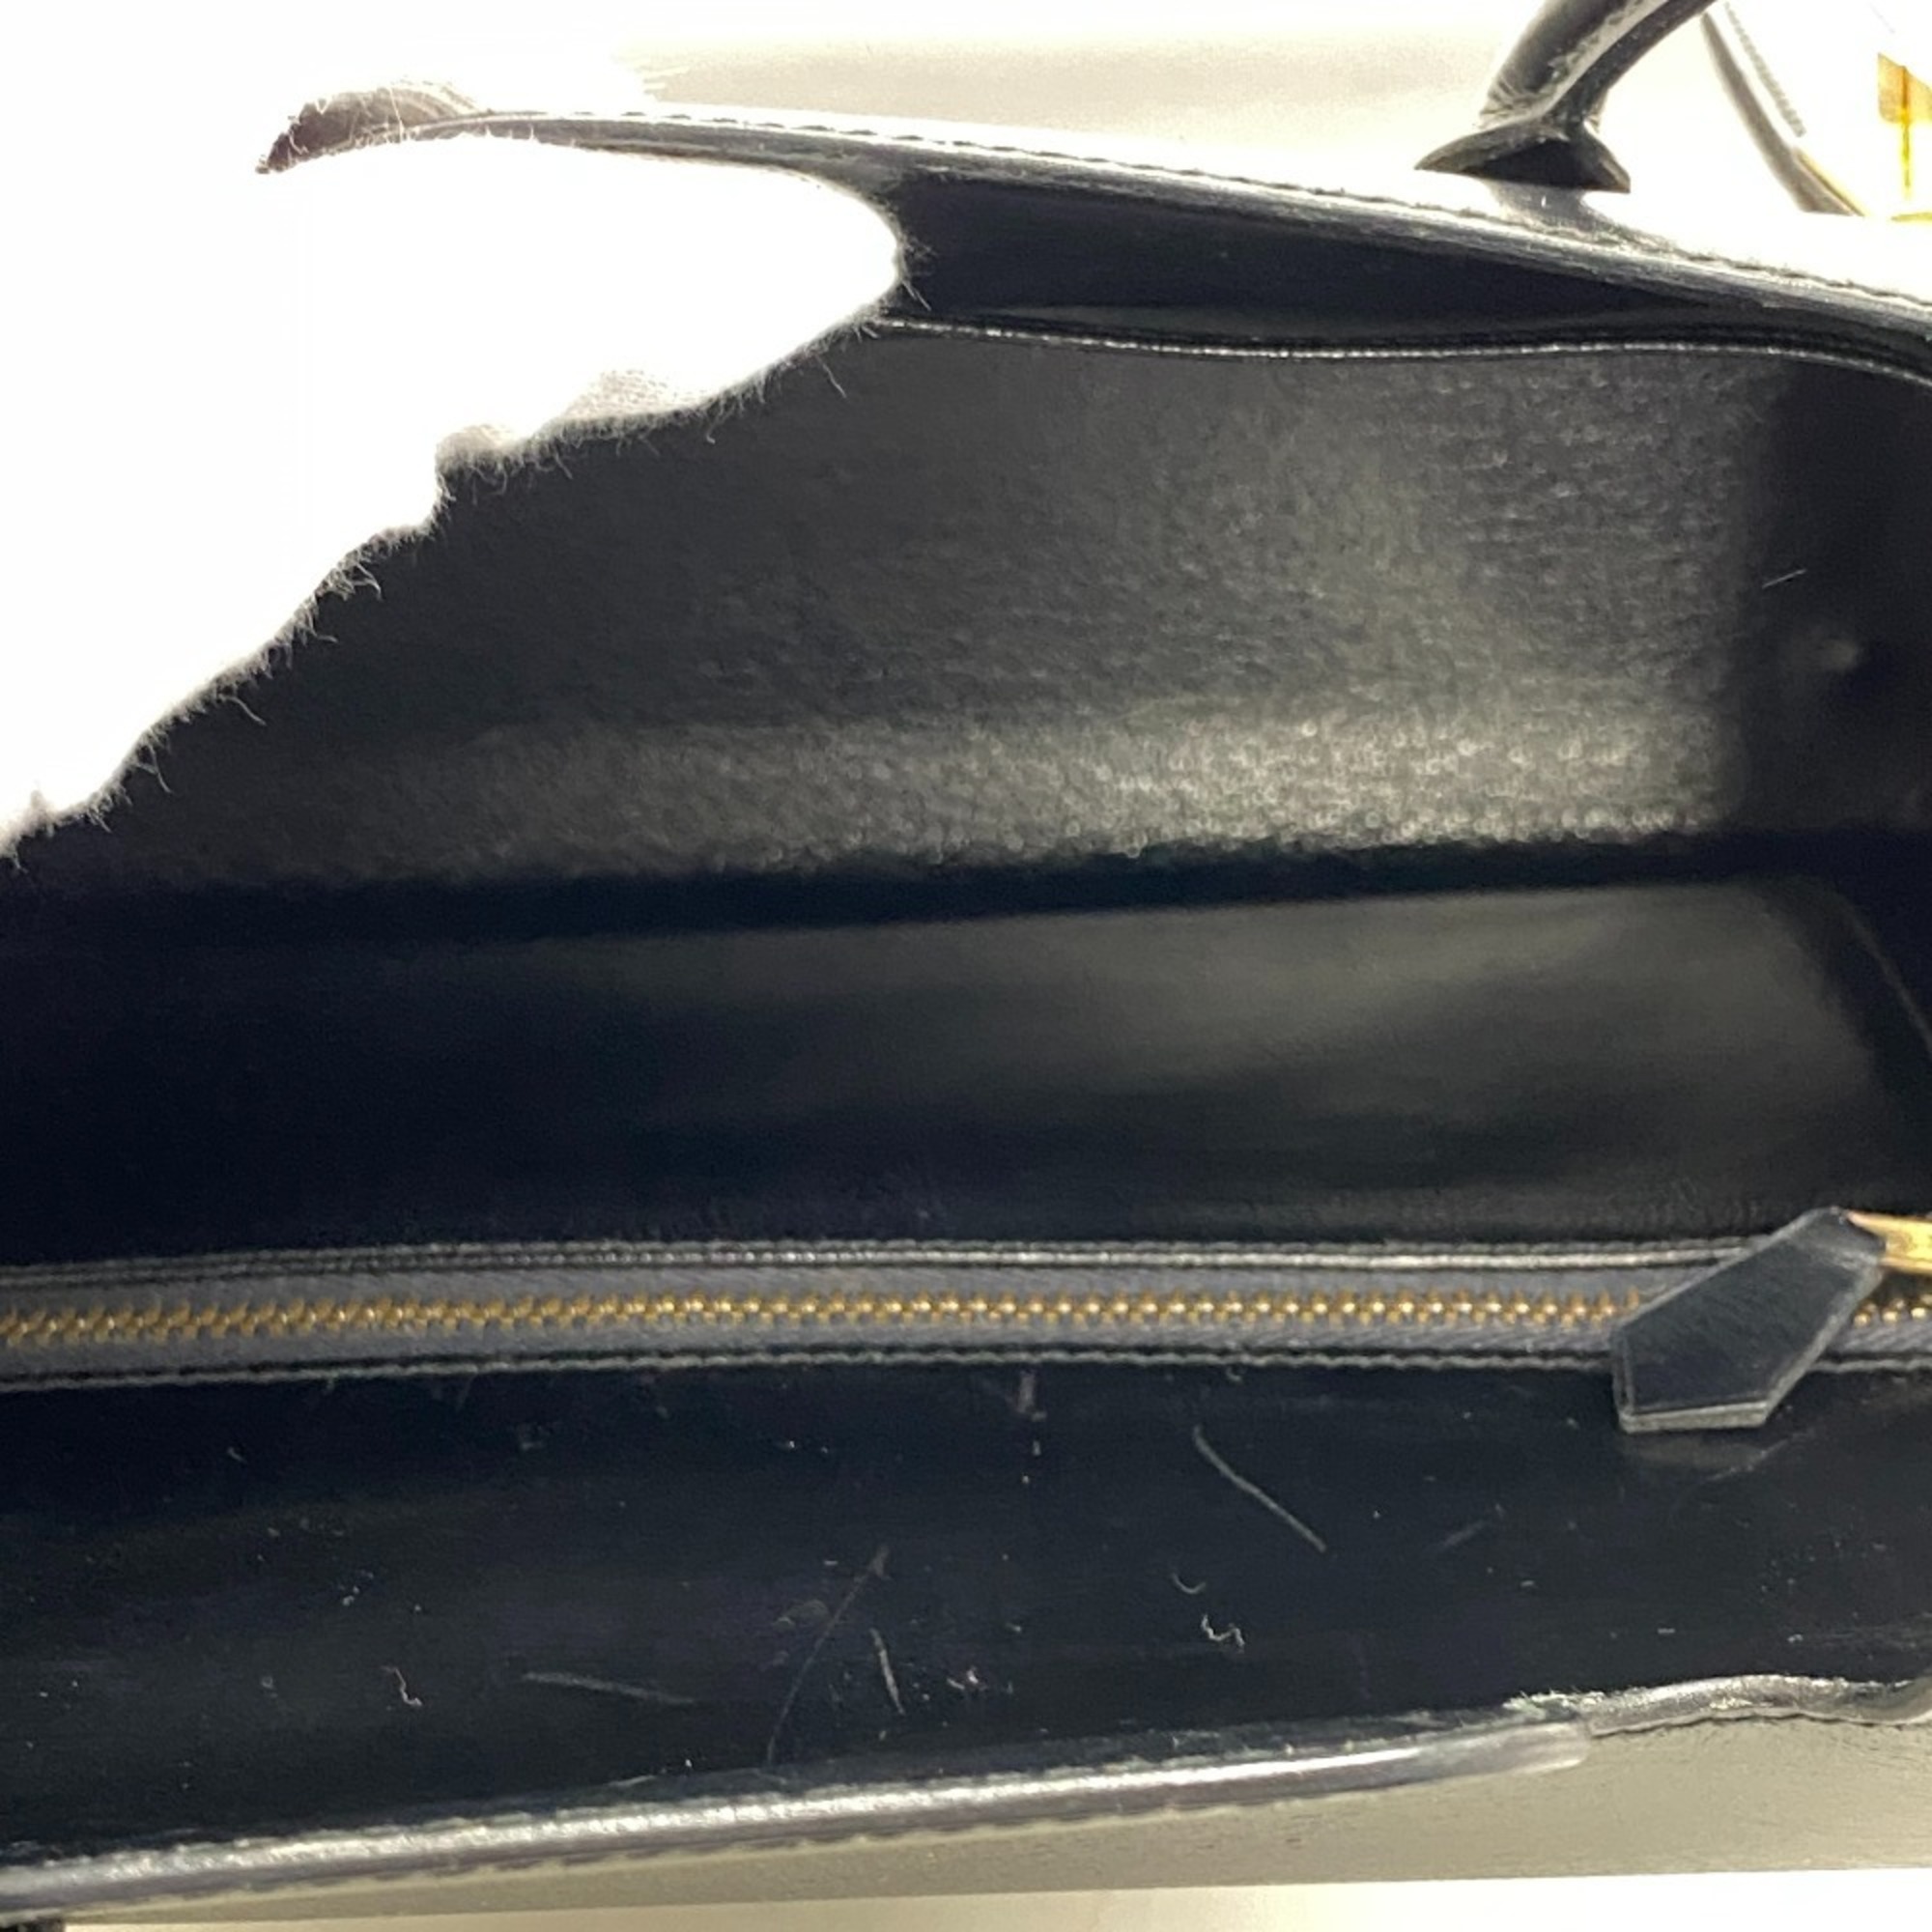 HERMES Drag 27 Handbag Black Ladies Z0005399